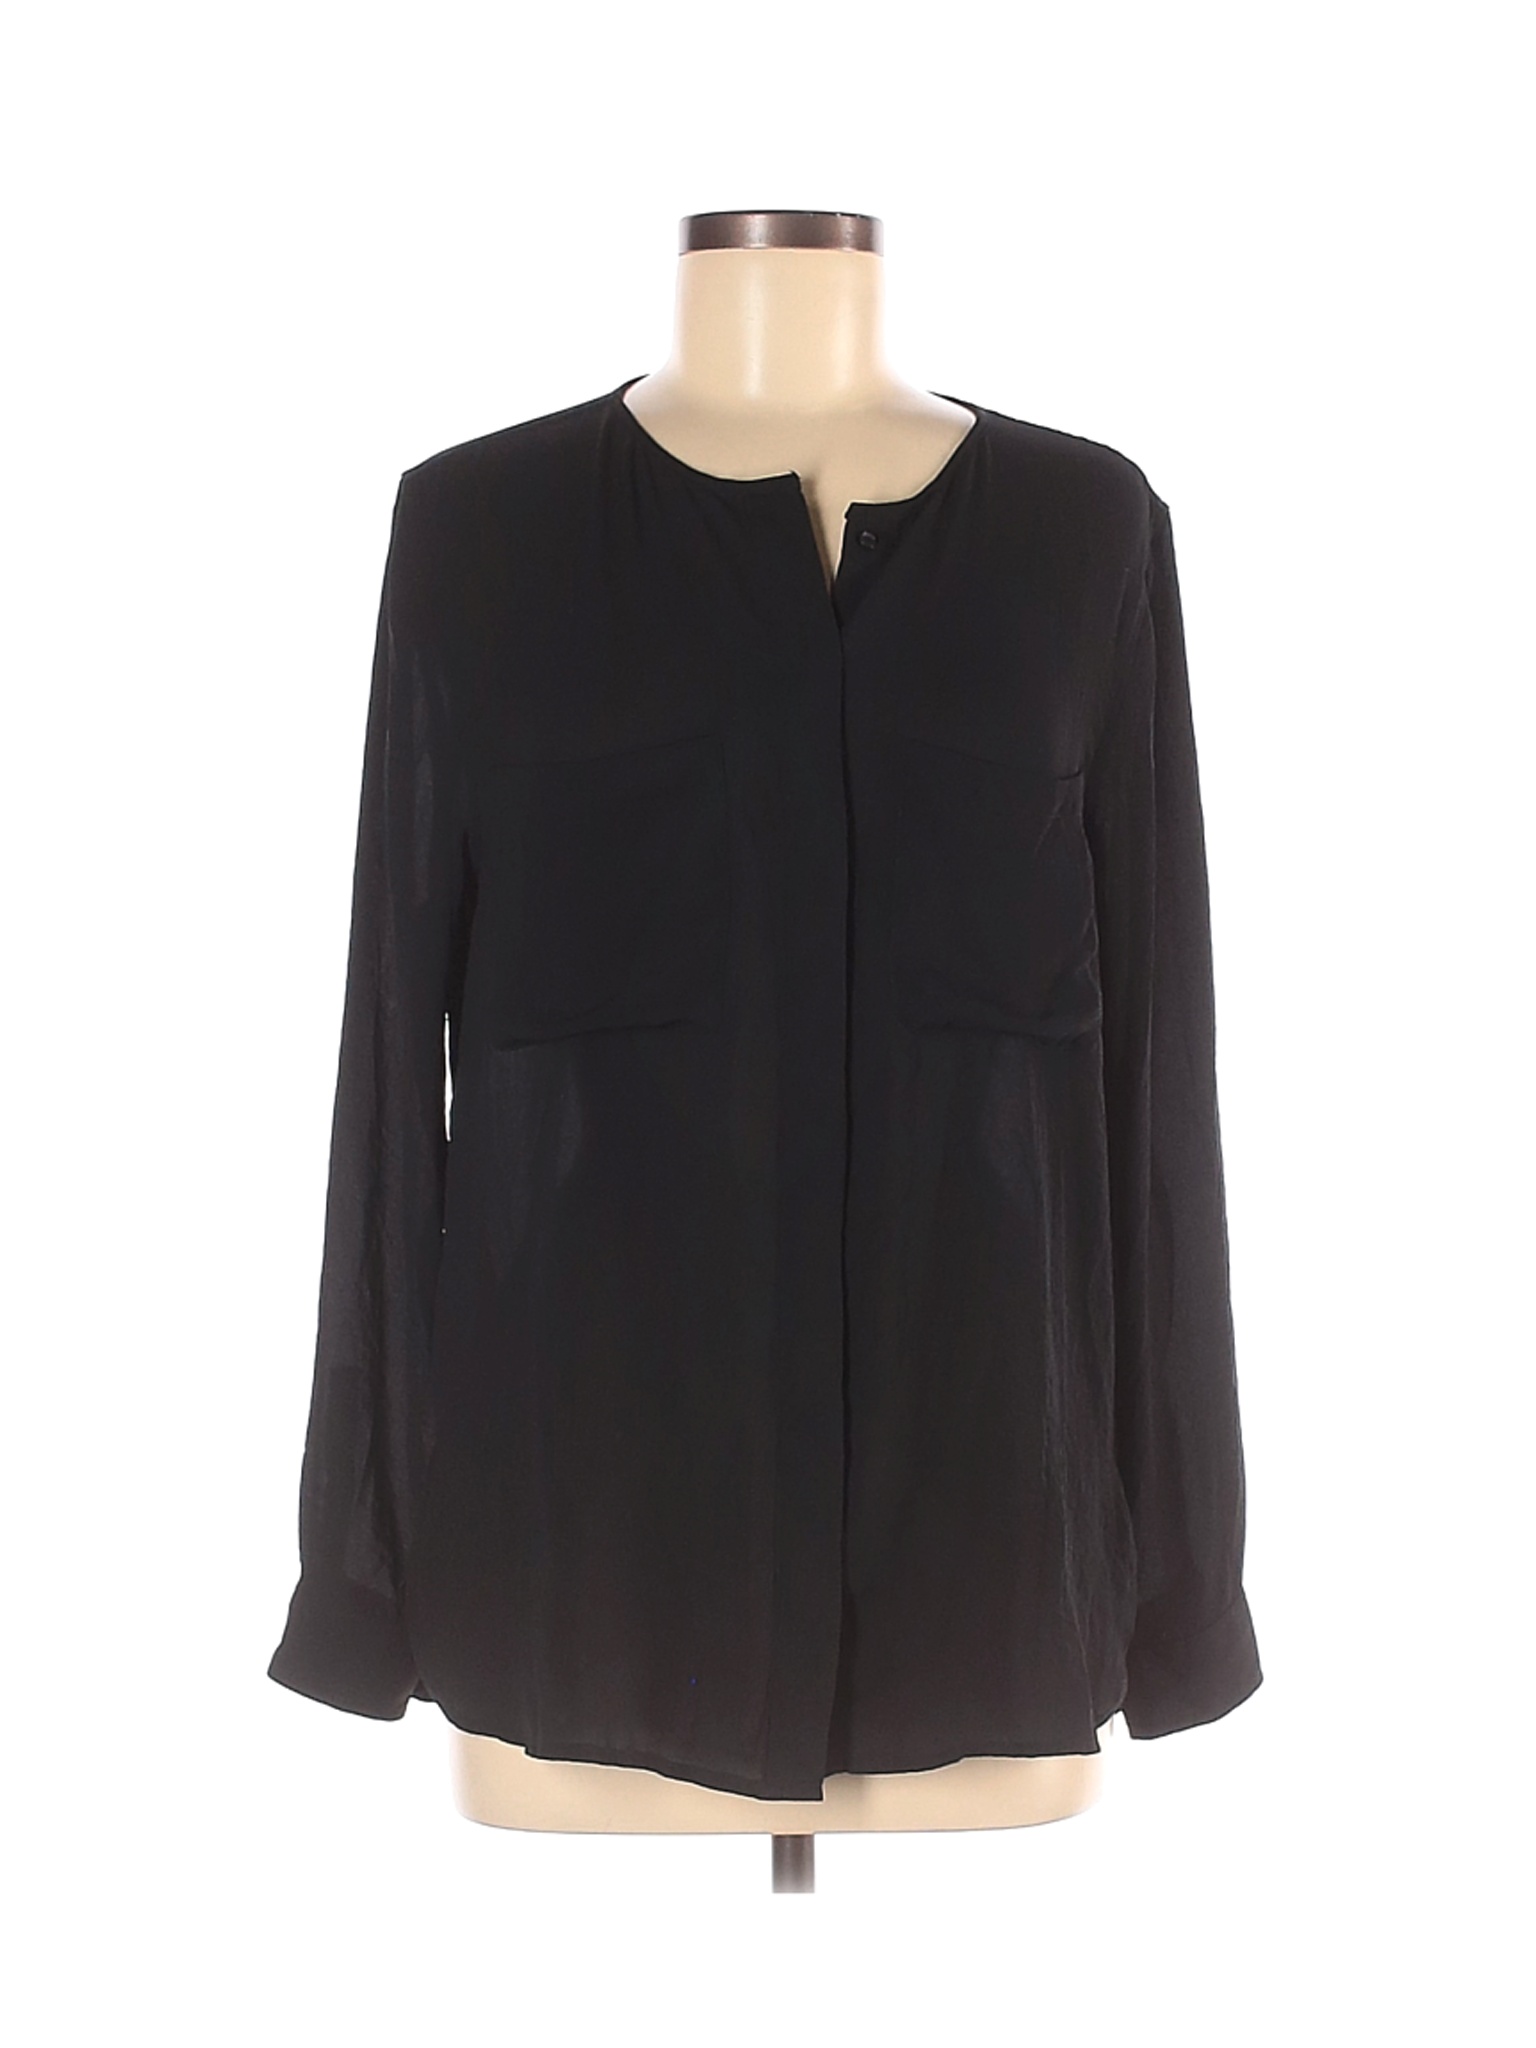 MNG Basics Women Black Long Sleeve Blouse 6 | eBay